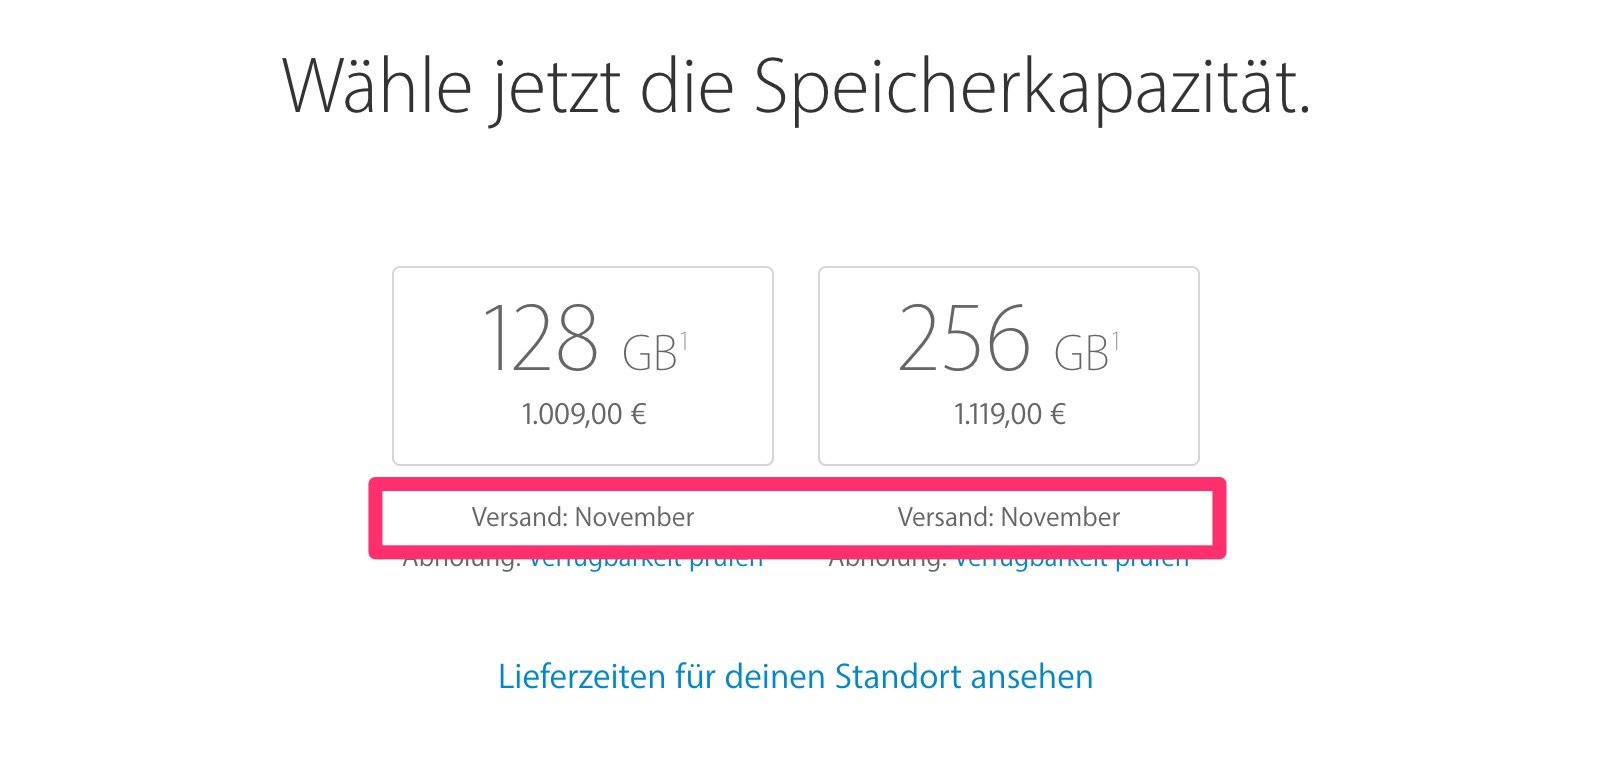 iPhone 7 (Plus) schon ausverkauft: Lieferzeit / Lieferung im November! 5